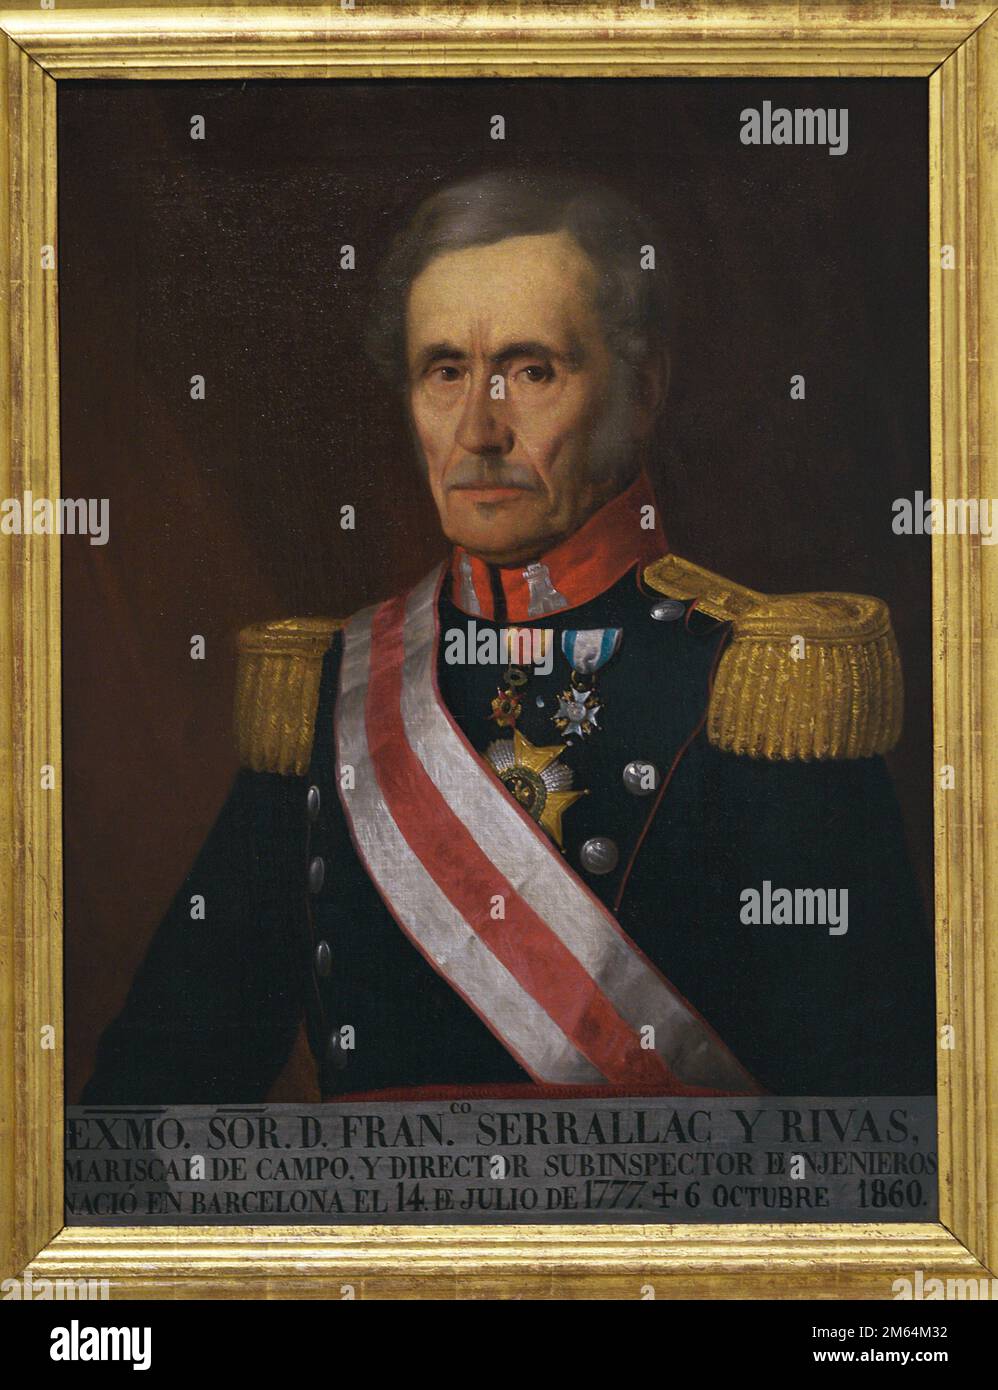 Francisco Serrallac y Rivas (1777-1860). Militare spagnolo. Field Marshal of Engineers. Verticale. Anonimo, c. 1900. Olio su tela. Museo dell'esercito. Toledo. Spagna. Autore: Anonimo. Foto Stock